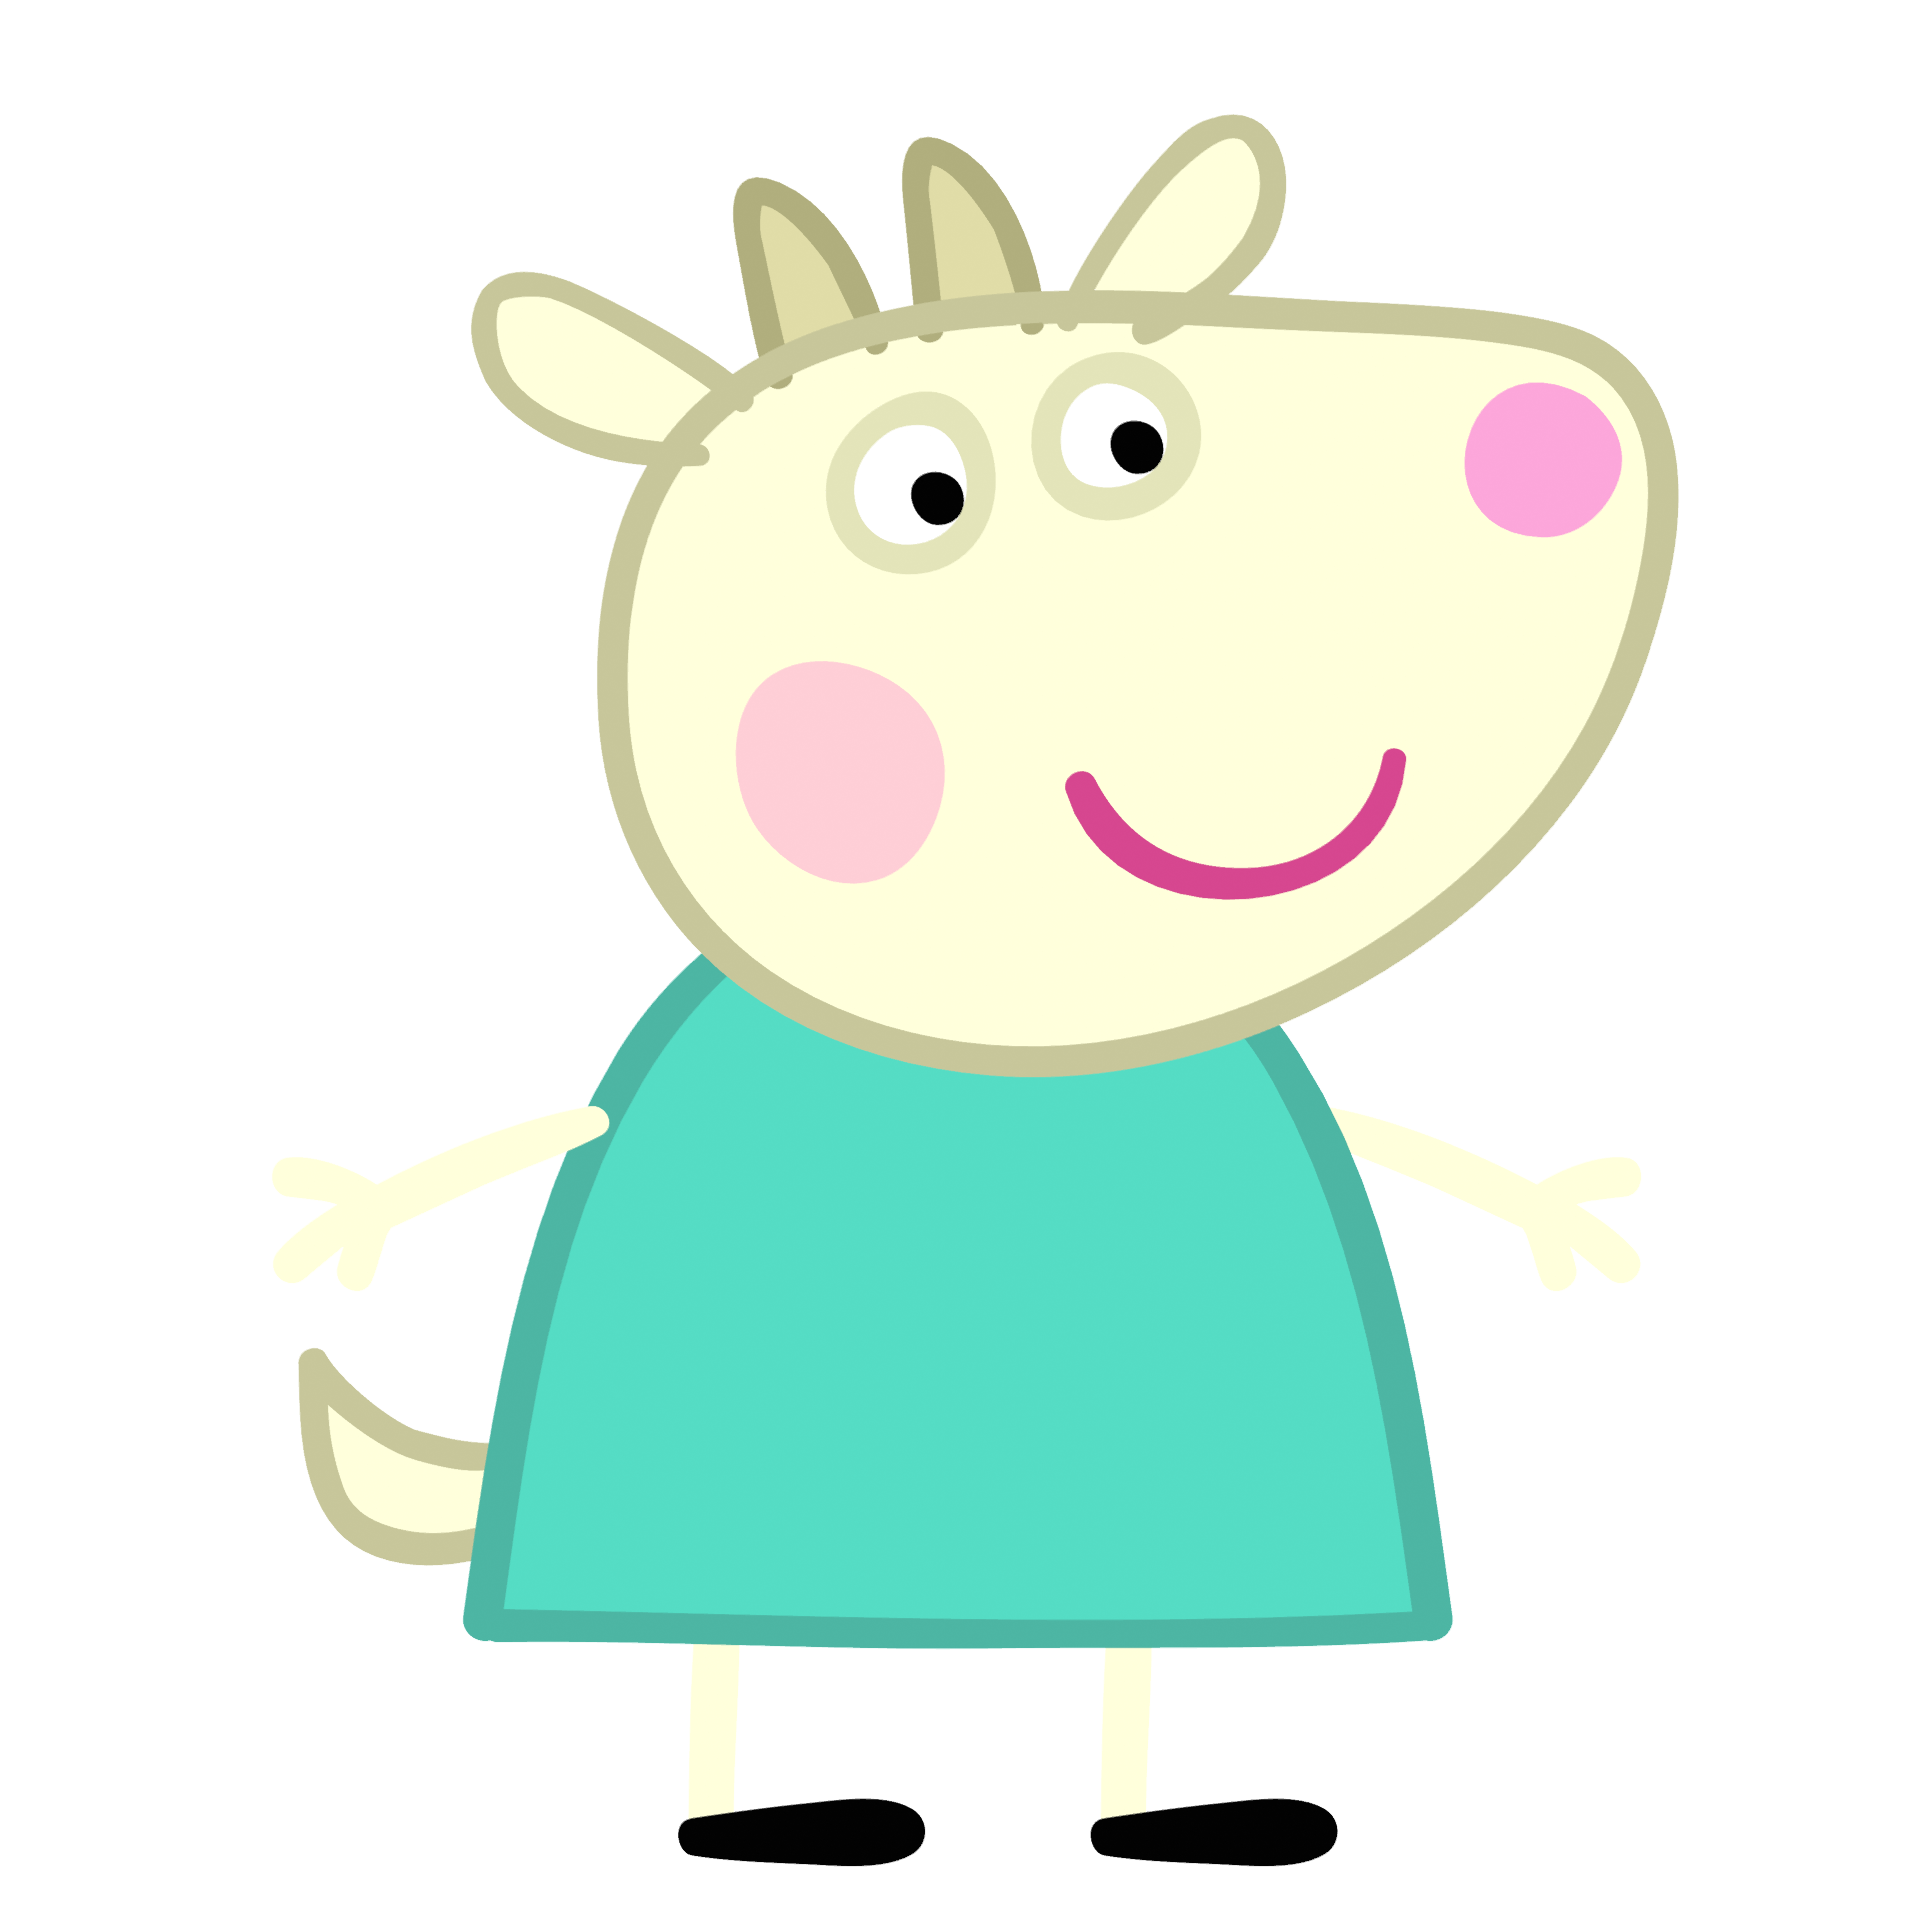 Peppa Pig (character), Peppa Pig Wiki